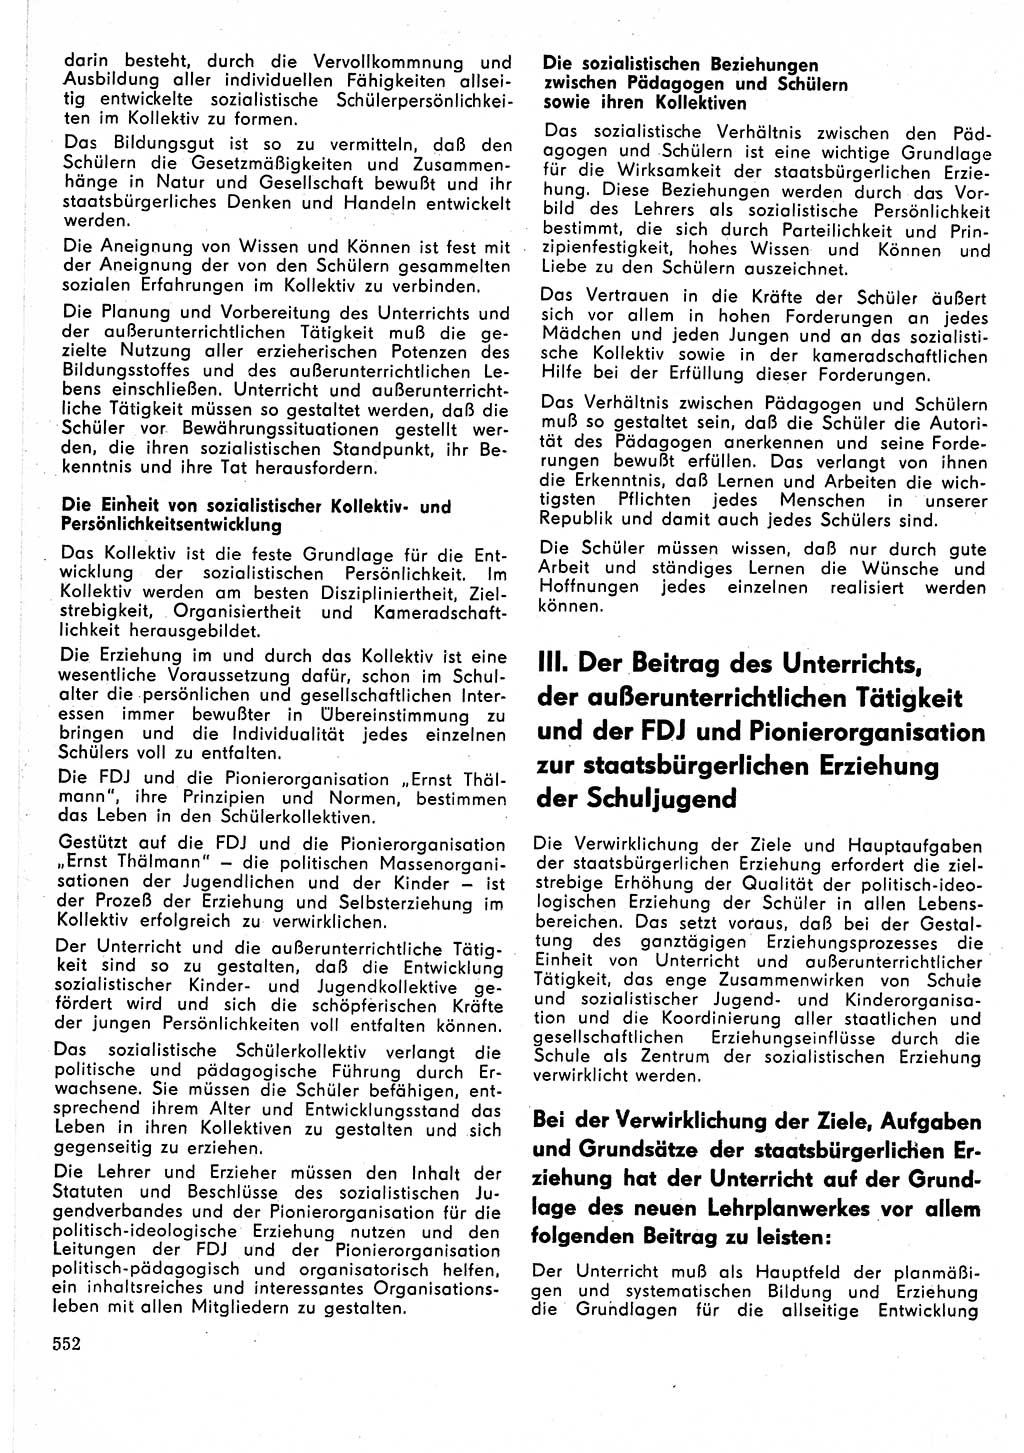 Neuer Weg (NW), Organ des Zentralkomitees (ZK) der SED (Sozialistische Einheitspartei Deutschlands) für Fragen des Parteilebens, 24. Jahrgang [Deutsche Demokratische Republik (DDR)] 1969, Seite 552 (NW ZK SED DDR 1969, S. 552)